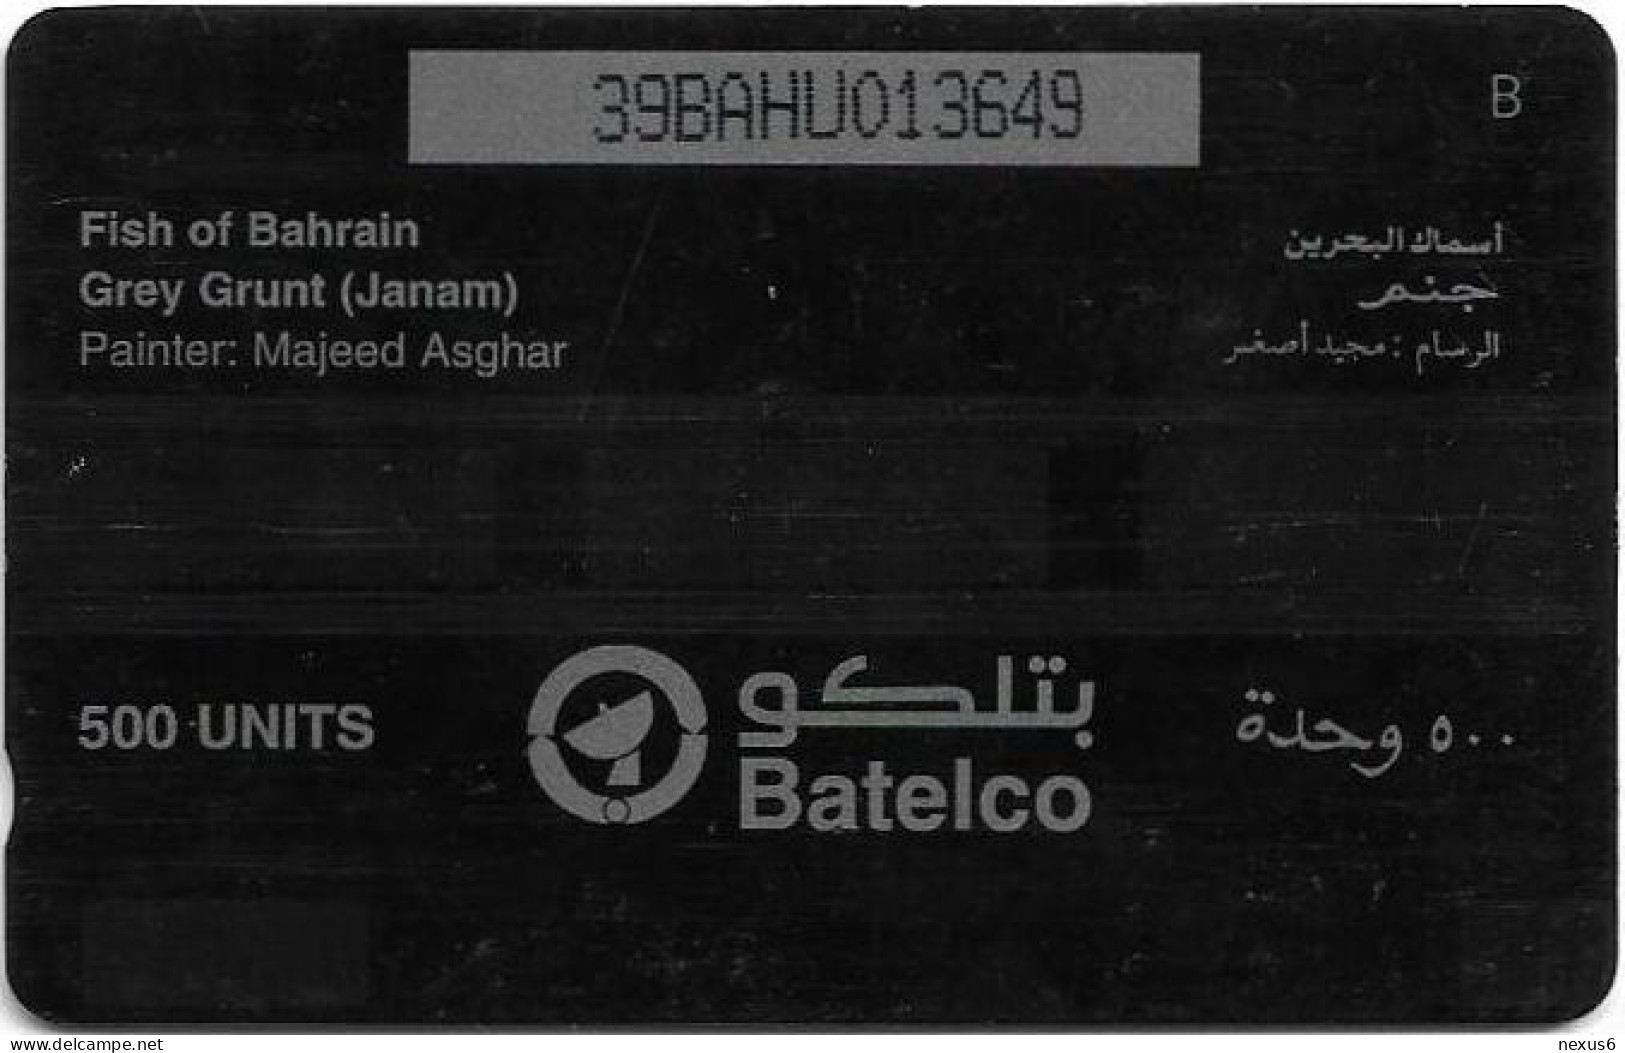 Bahrain - Batelco (GPT) - Fish Of Bahrain - Grey Grunt - 39BAHU (Normal 0, Round Top ''3''), 1996, 500U, Used - Baharain